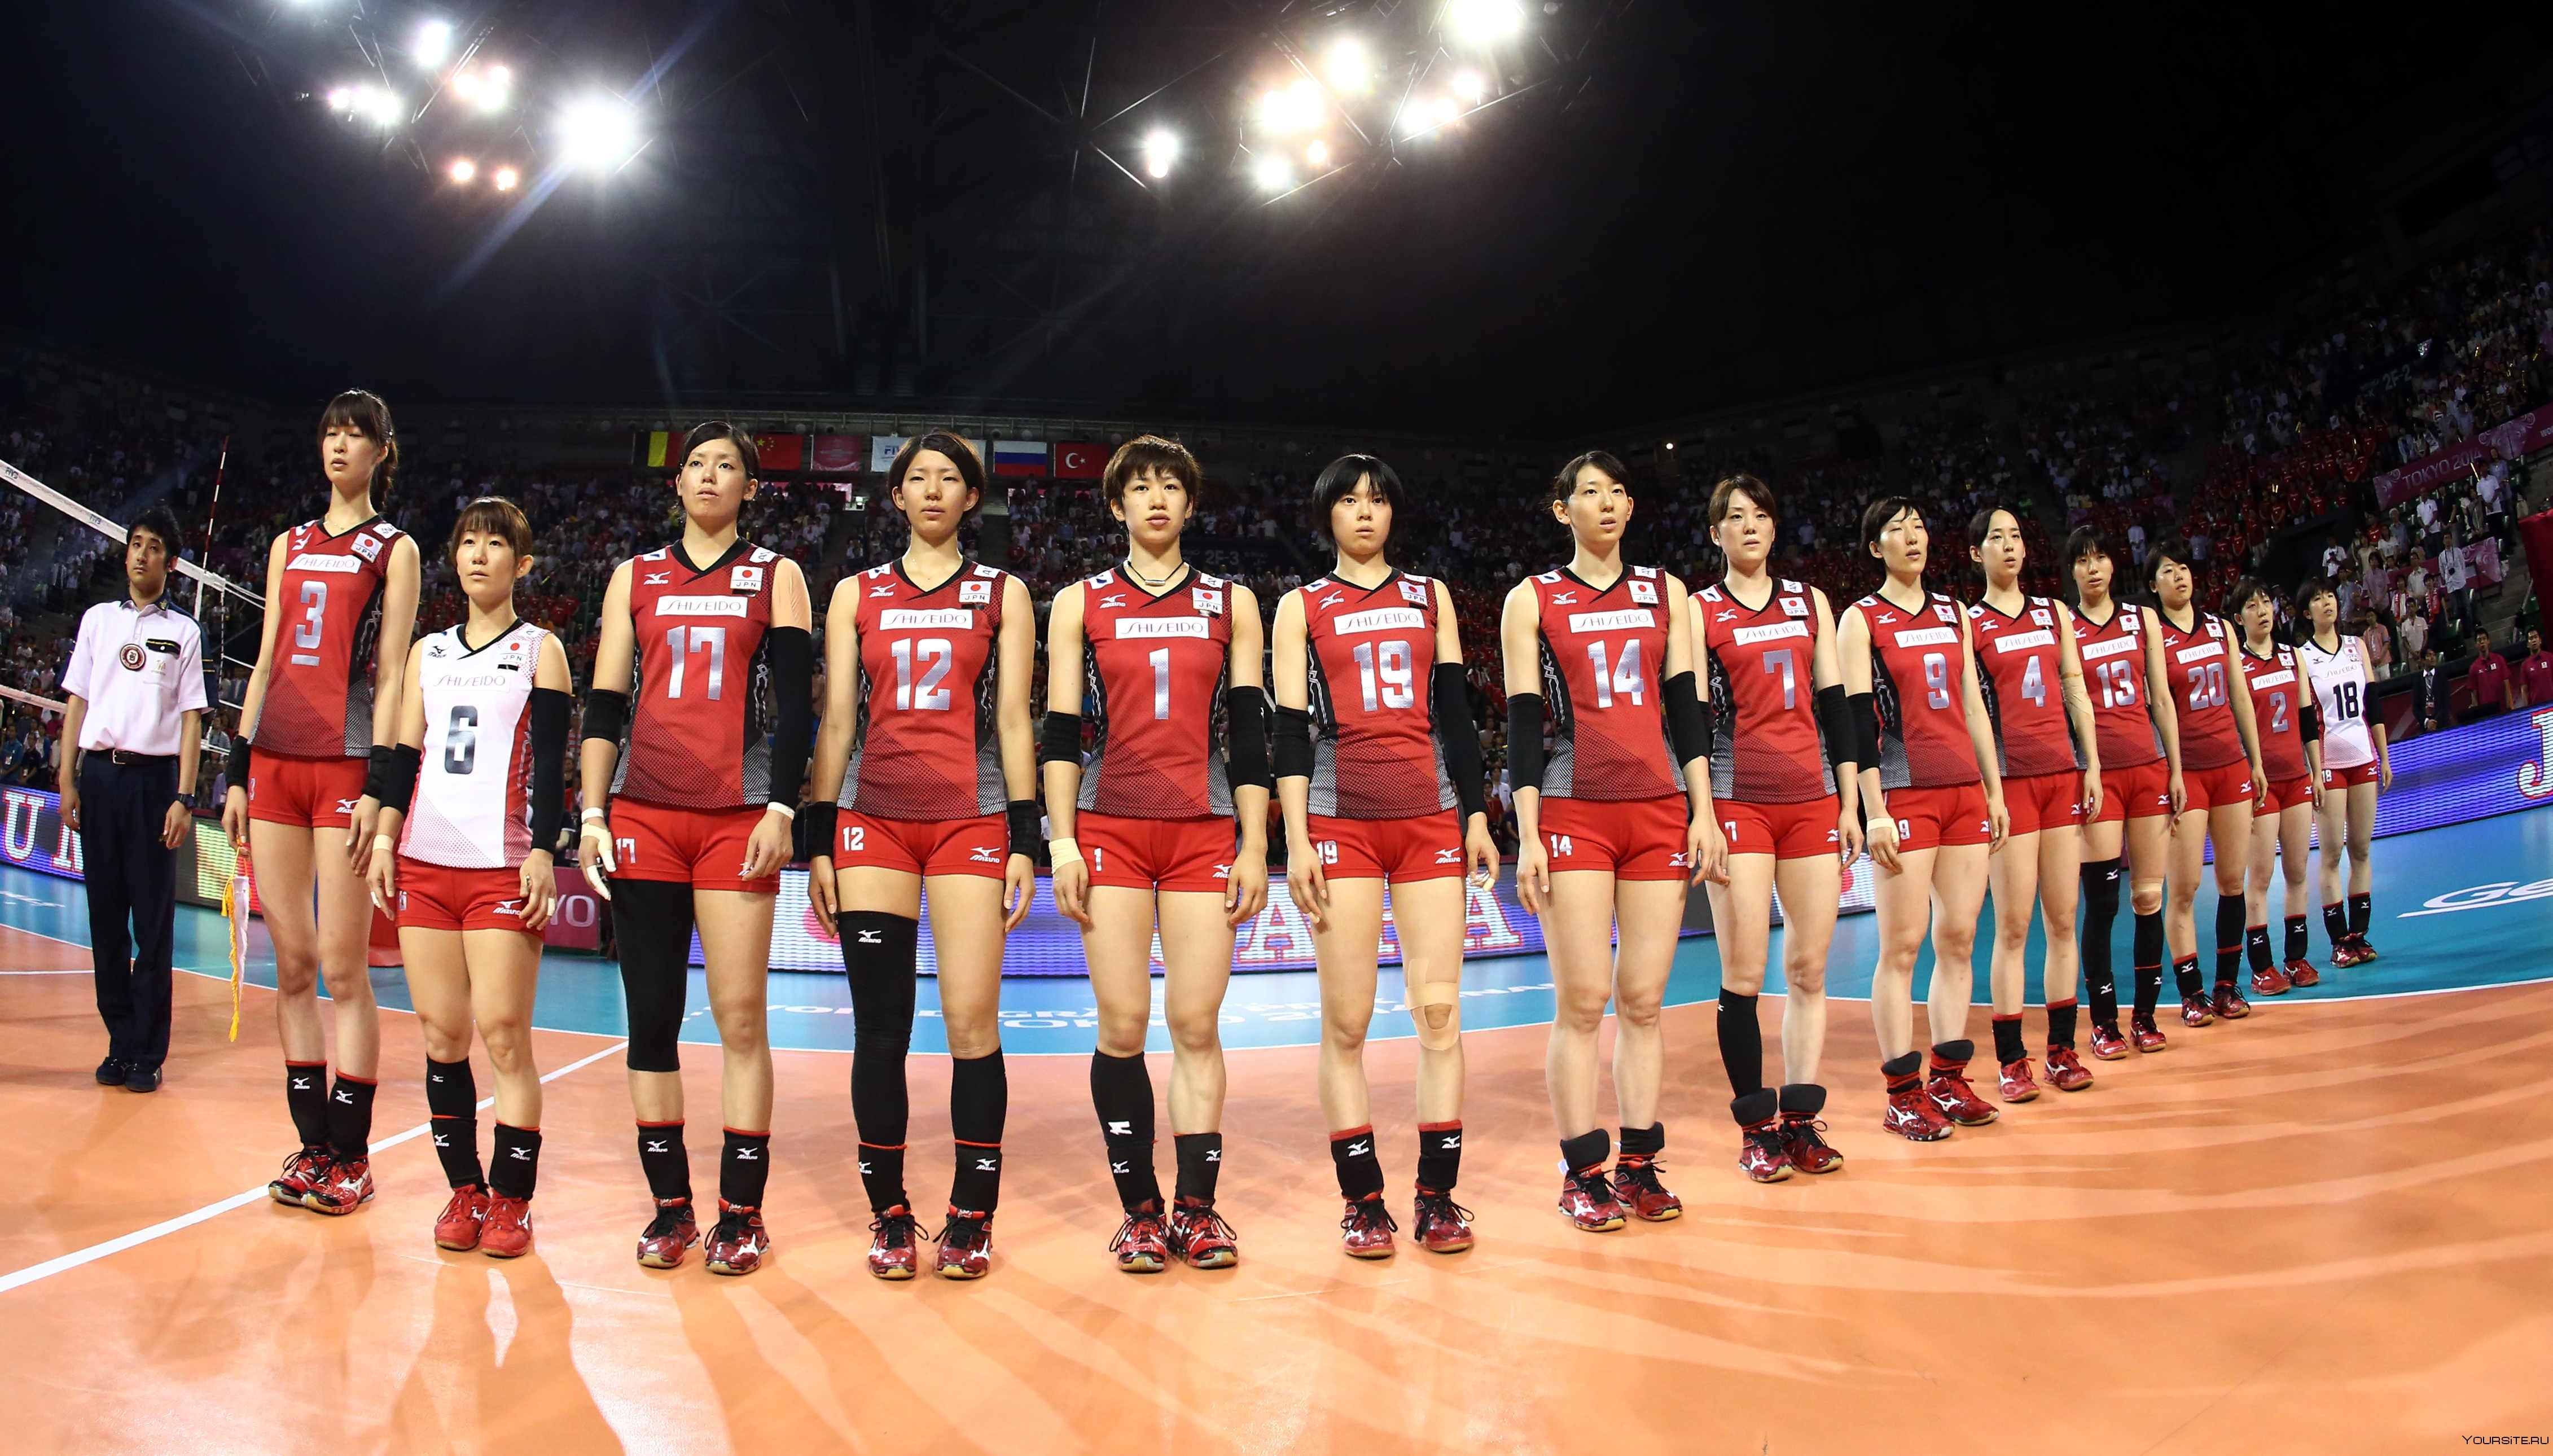 Япония волейбол мужчины. Мужская сборная Японии по волейболу волейболисты Японии. Волейбольная команда Японии мужская сборная. Либеро японской сборной по волейболу. Волейбольная команда Японии мужская рост.